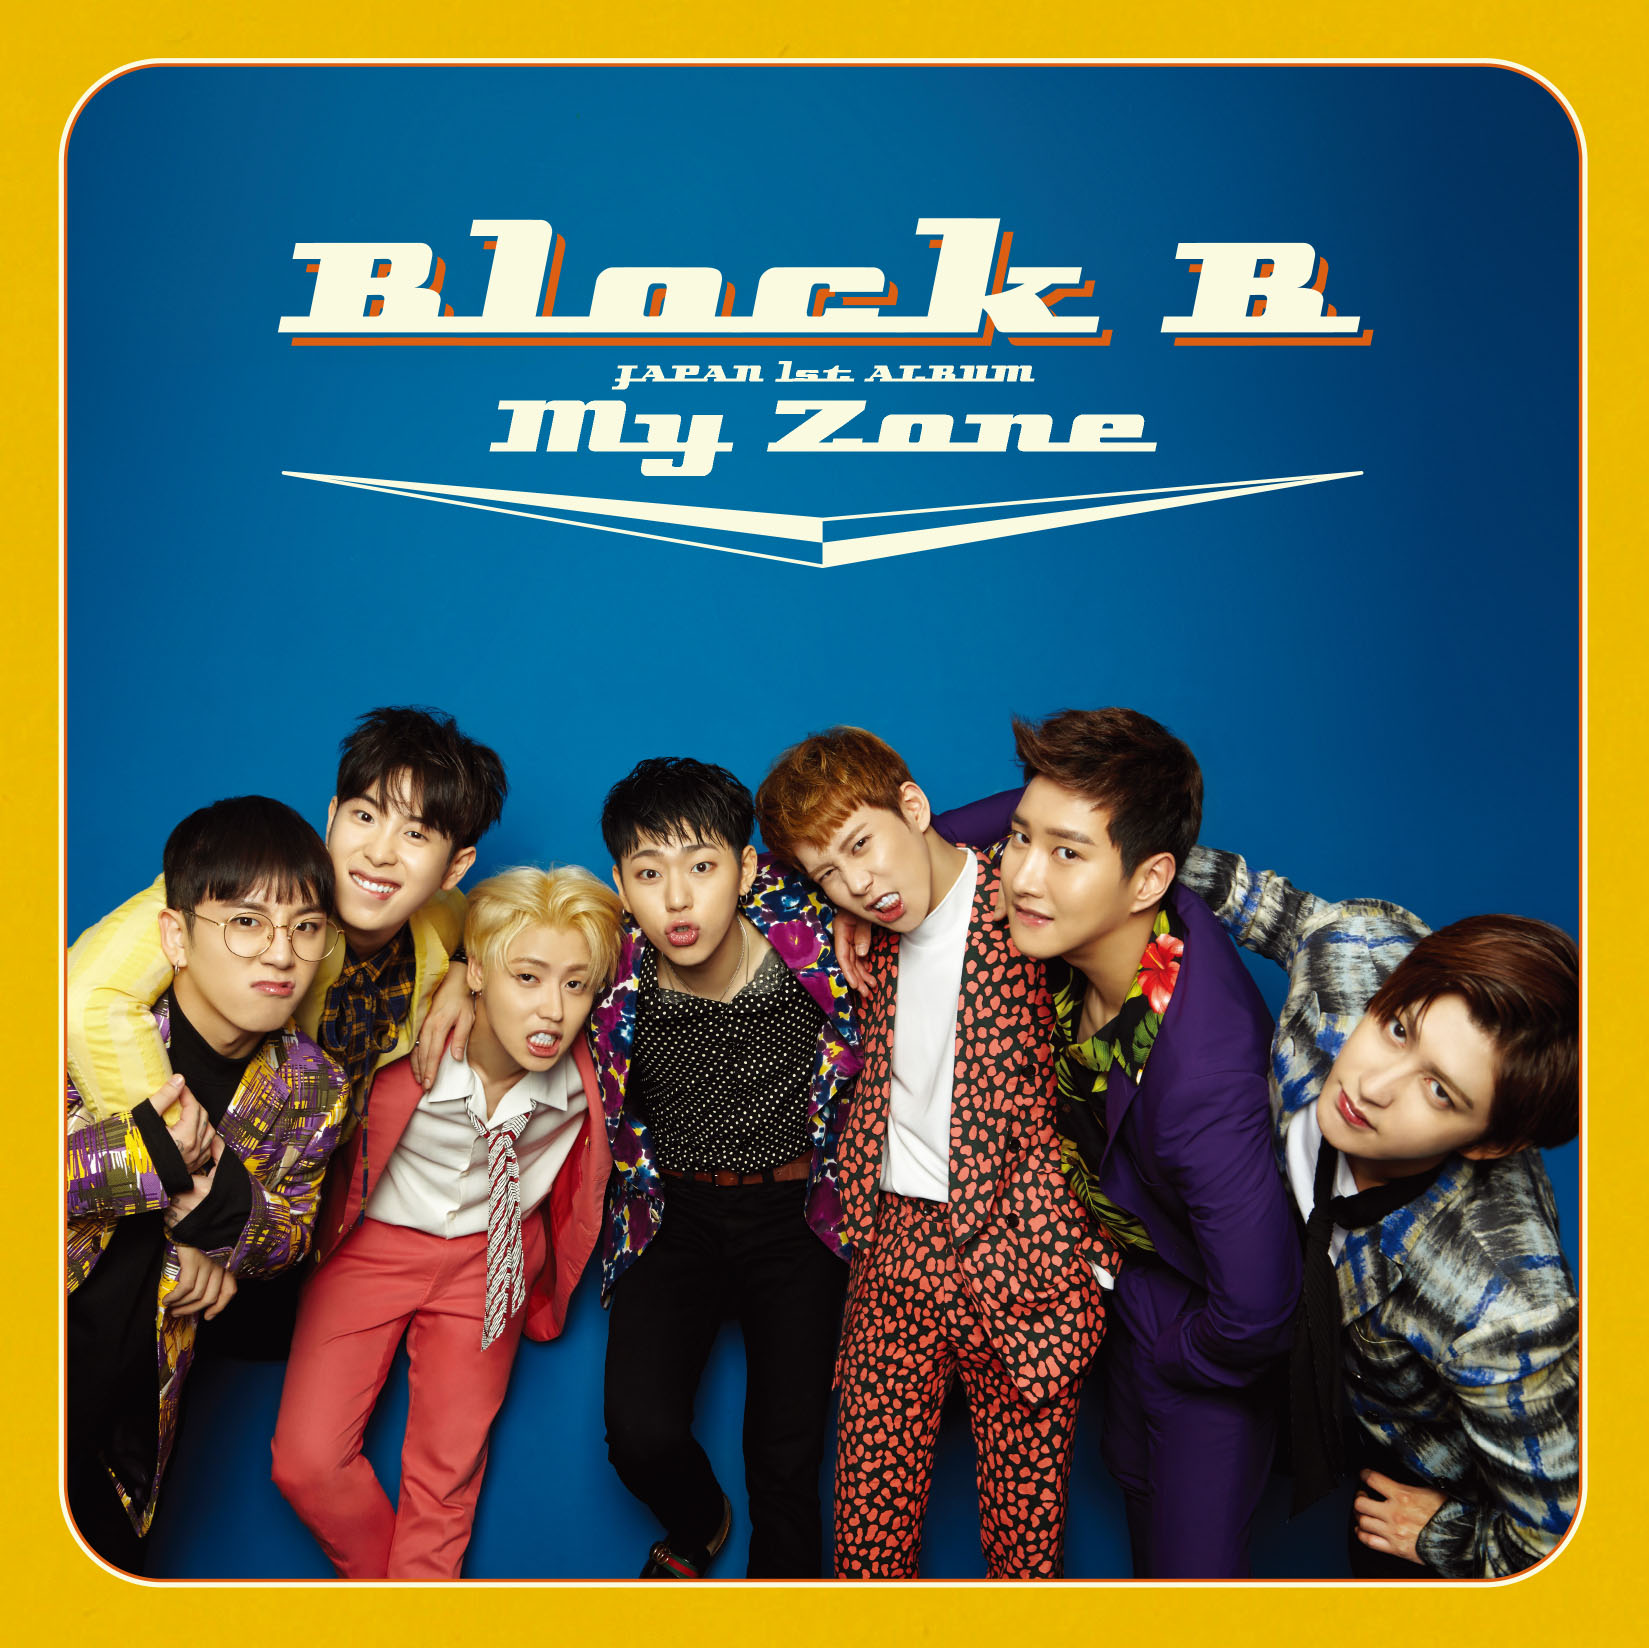 Les Block B sont prêts pour leur 1er album japonais et le font savoir